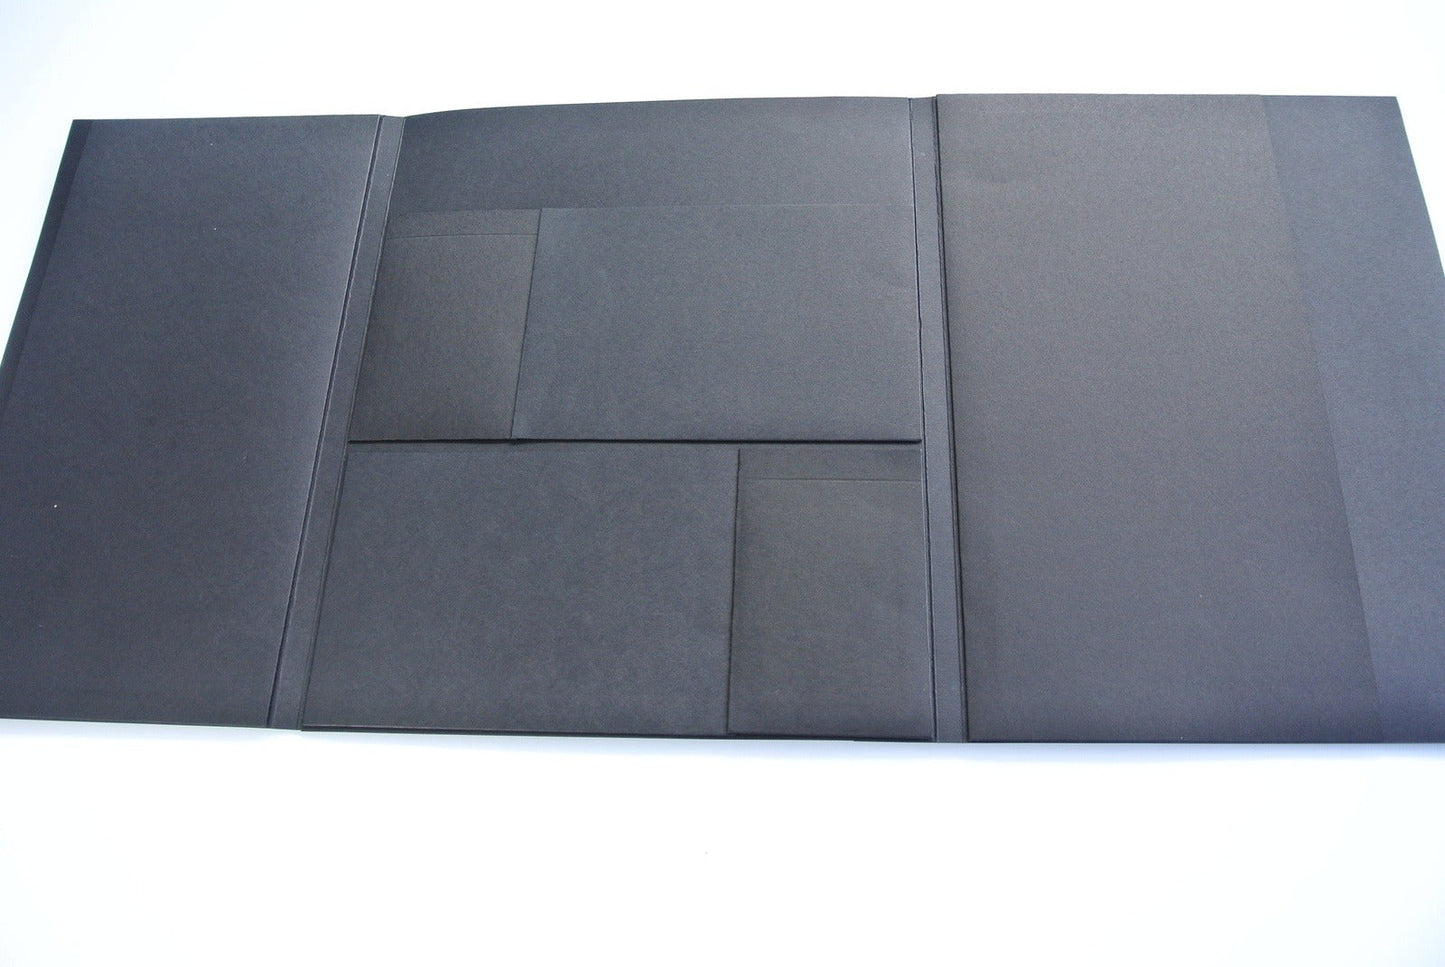 Folio Style Mini Album Kit, Blank Scrapbook Photo Album - Premade, Ready for you to decorate